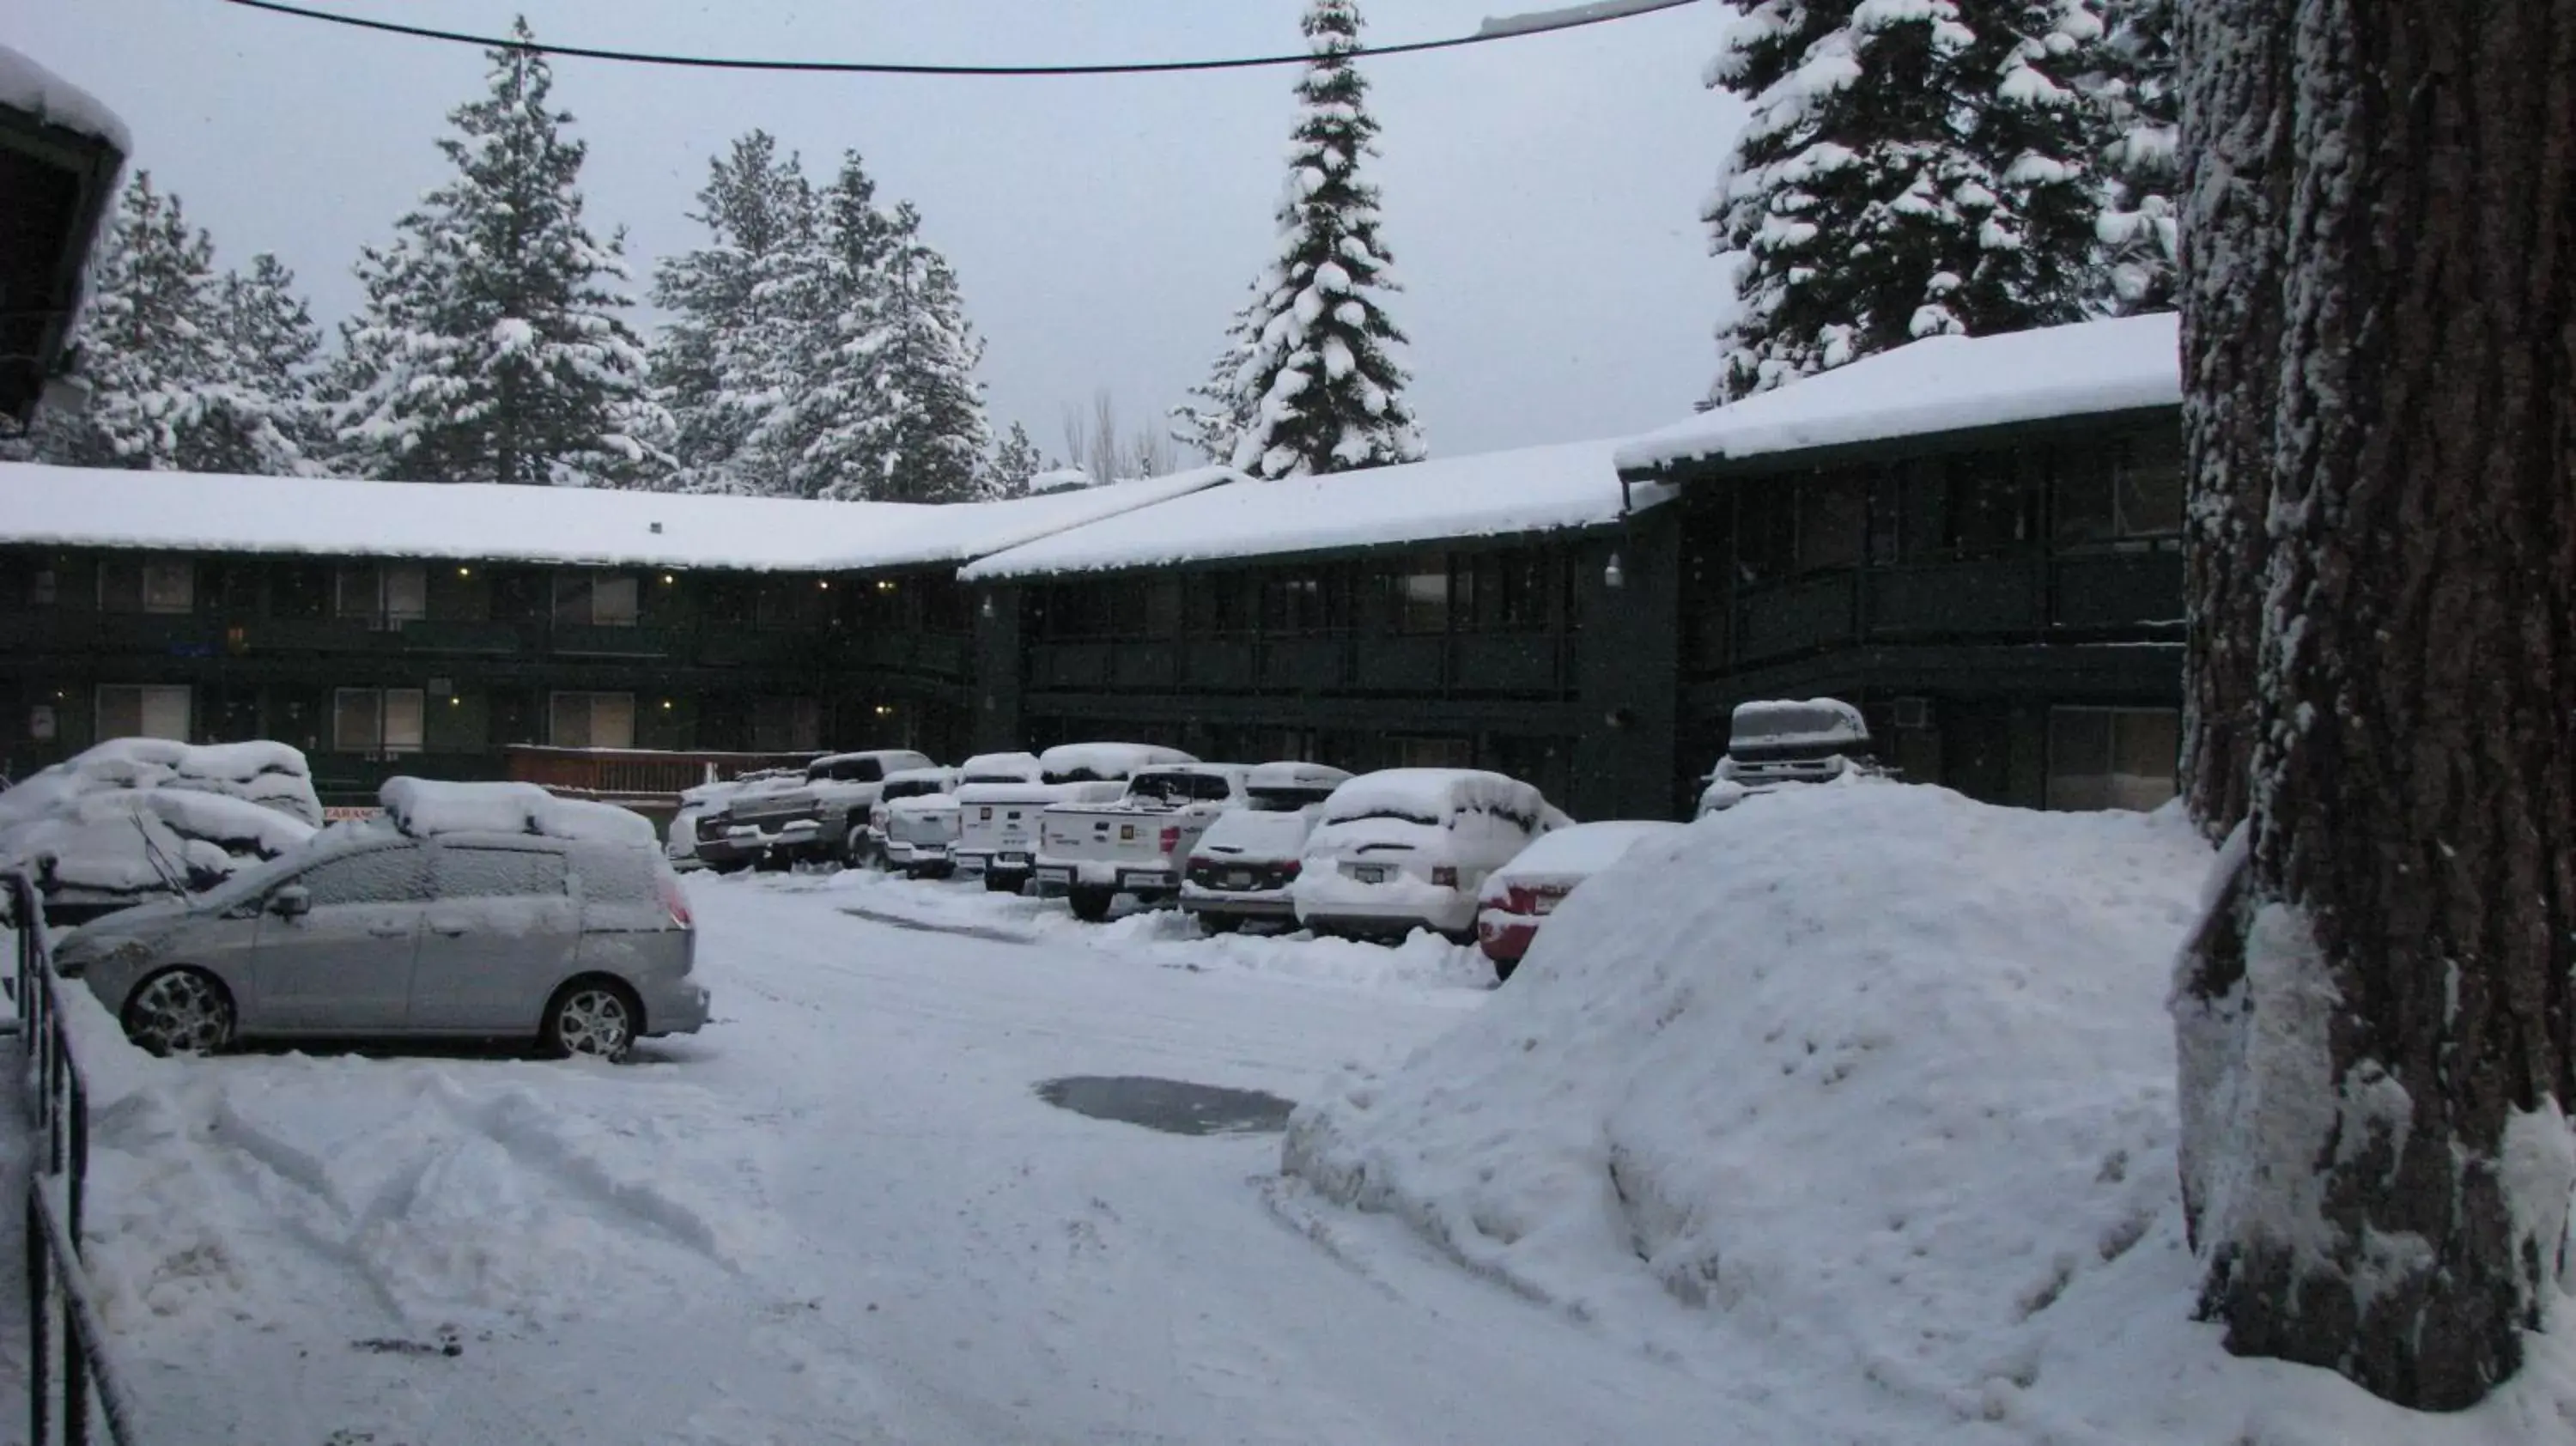 Facade/entrance, Winter in Big Pines Mountain House